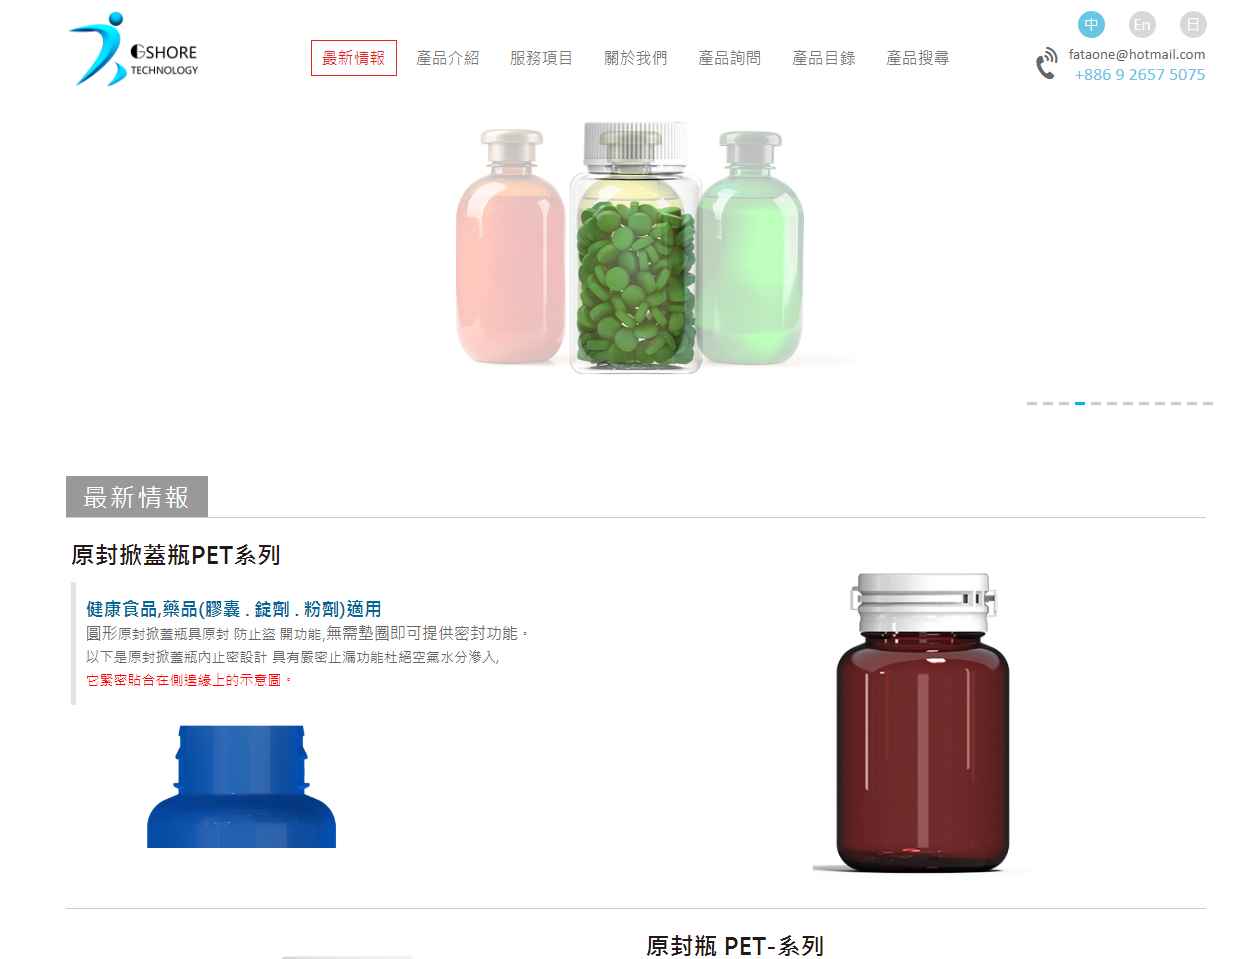 ッ ku su plastic containers Manufacture a